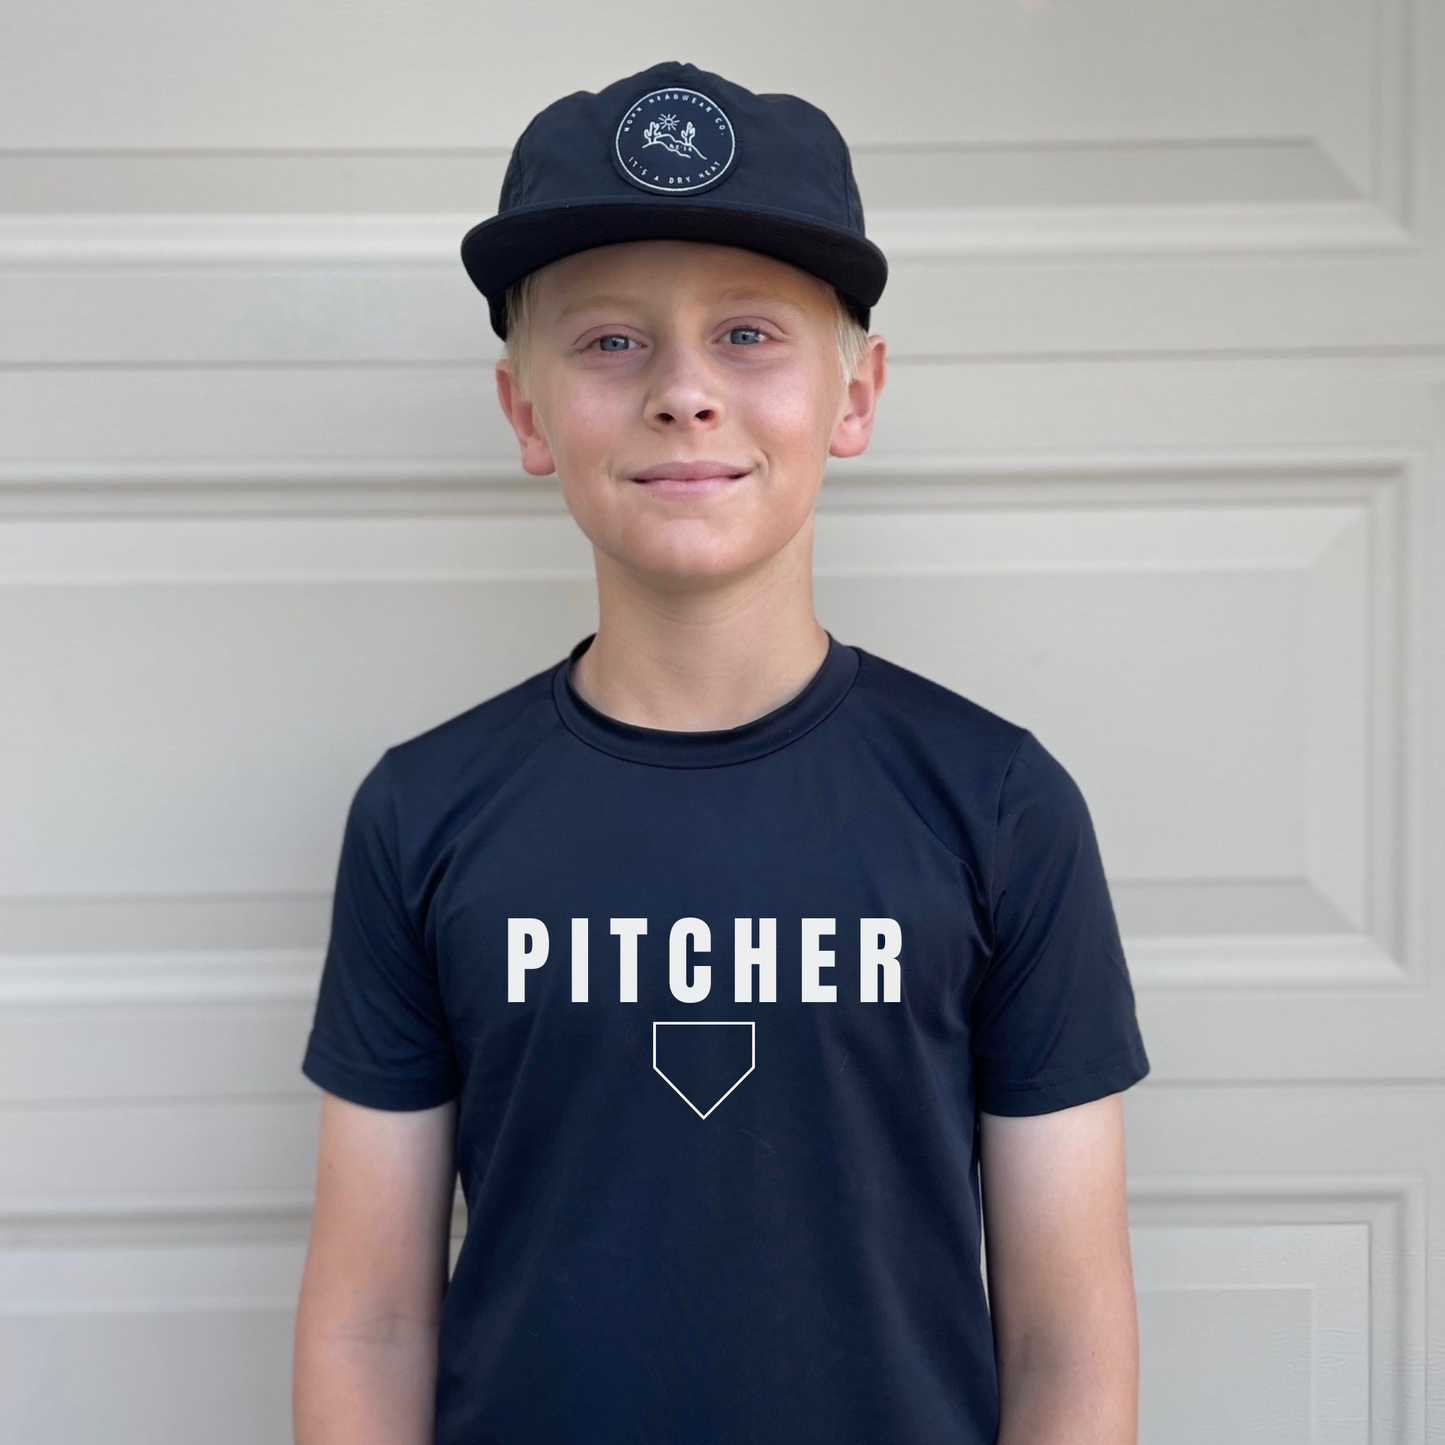 "Pitcher" T-Shirt